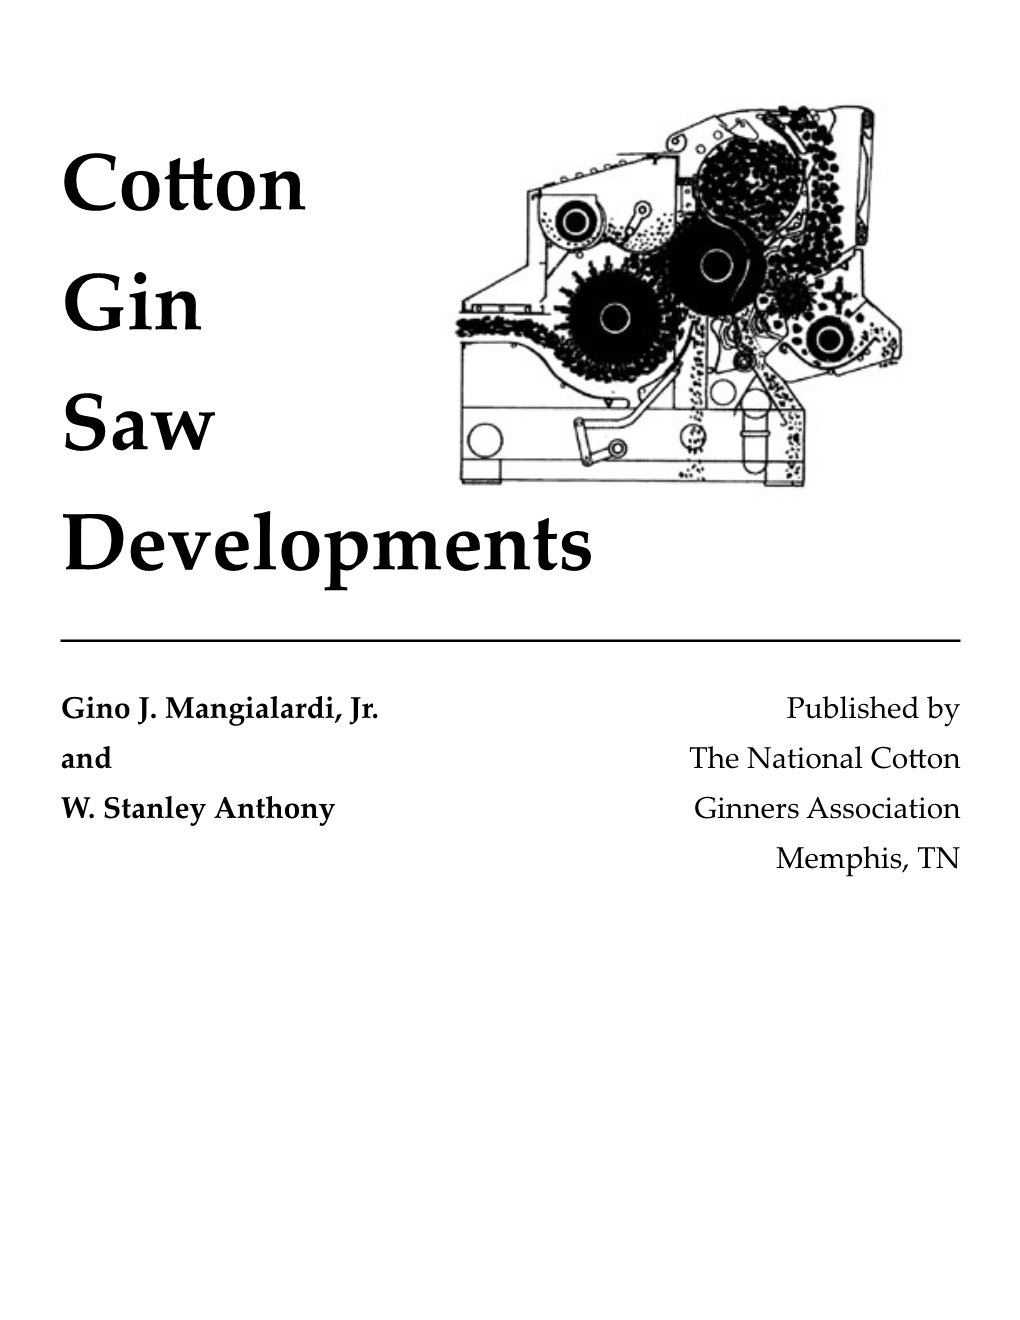 Cotton Gin Saw Developments